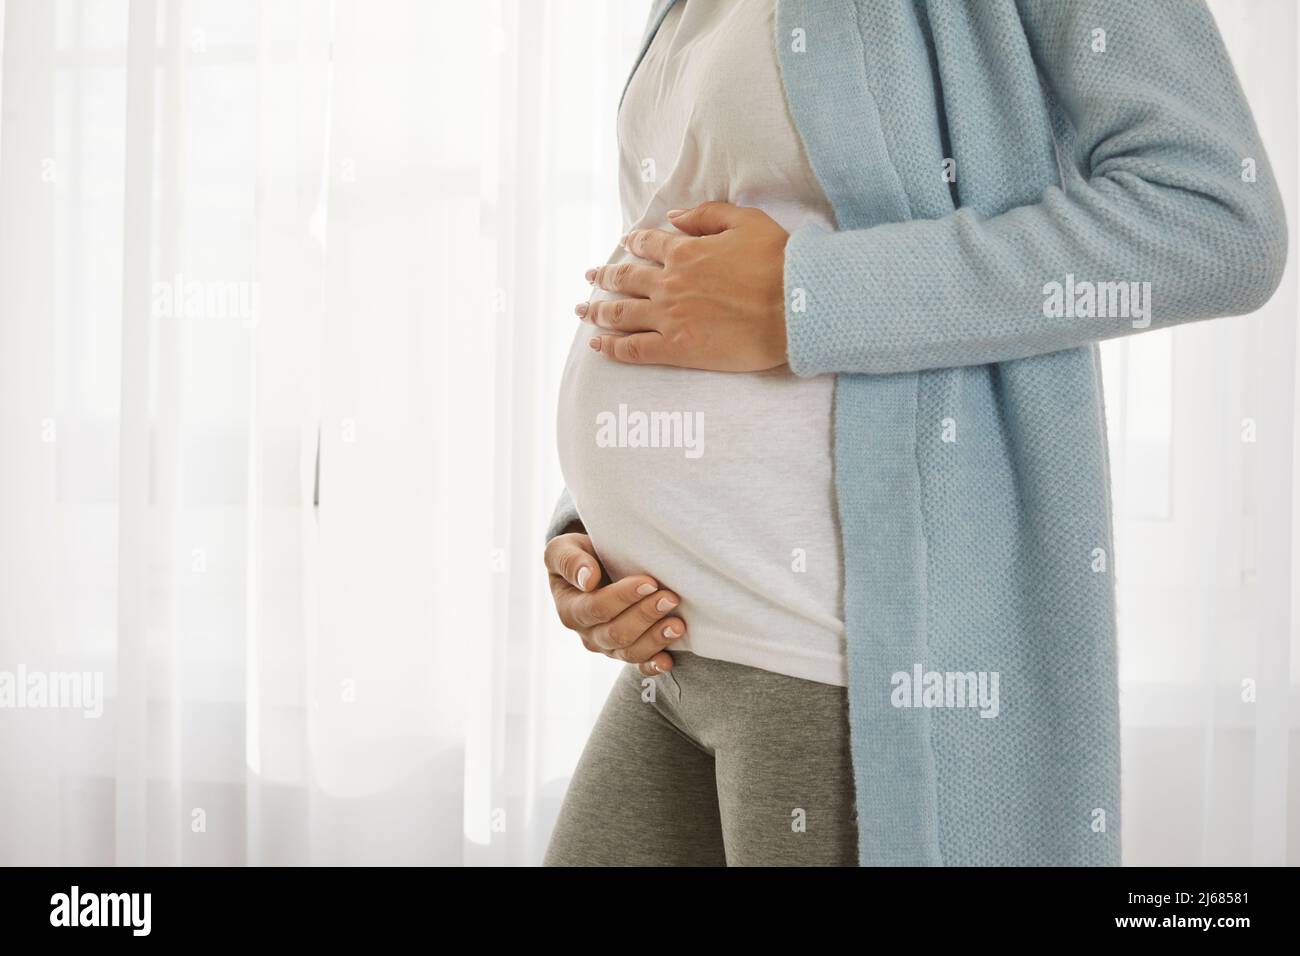 Nahaufnahme eines Schwangeren Bauch einer jungen Frau, die sich im dritten Trimester der Schwangerschaft befindet. Stockfoto